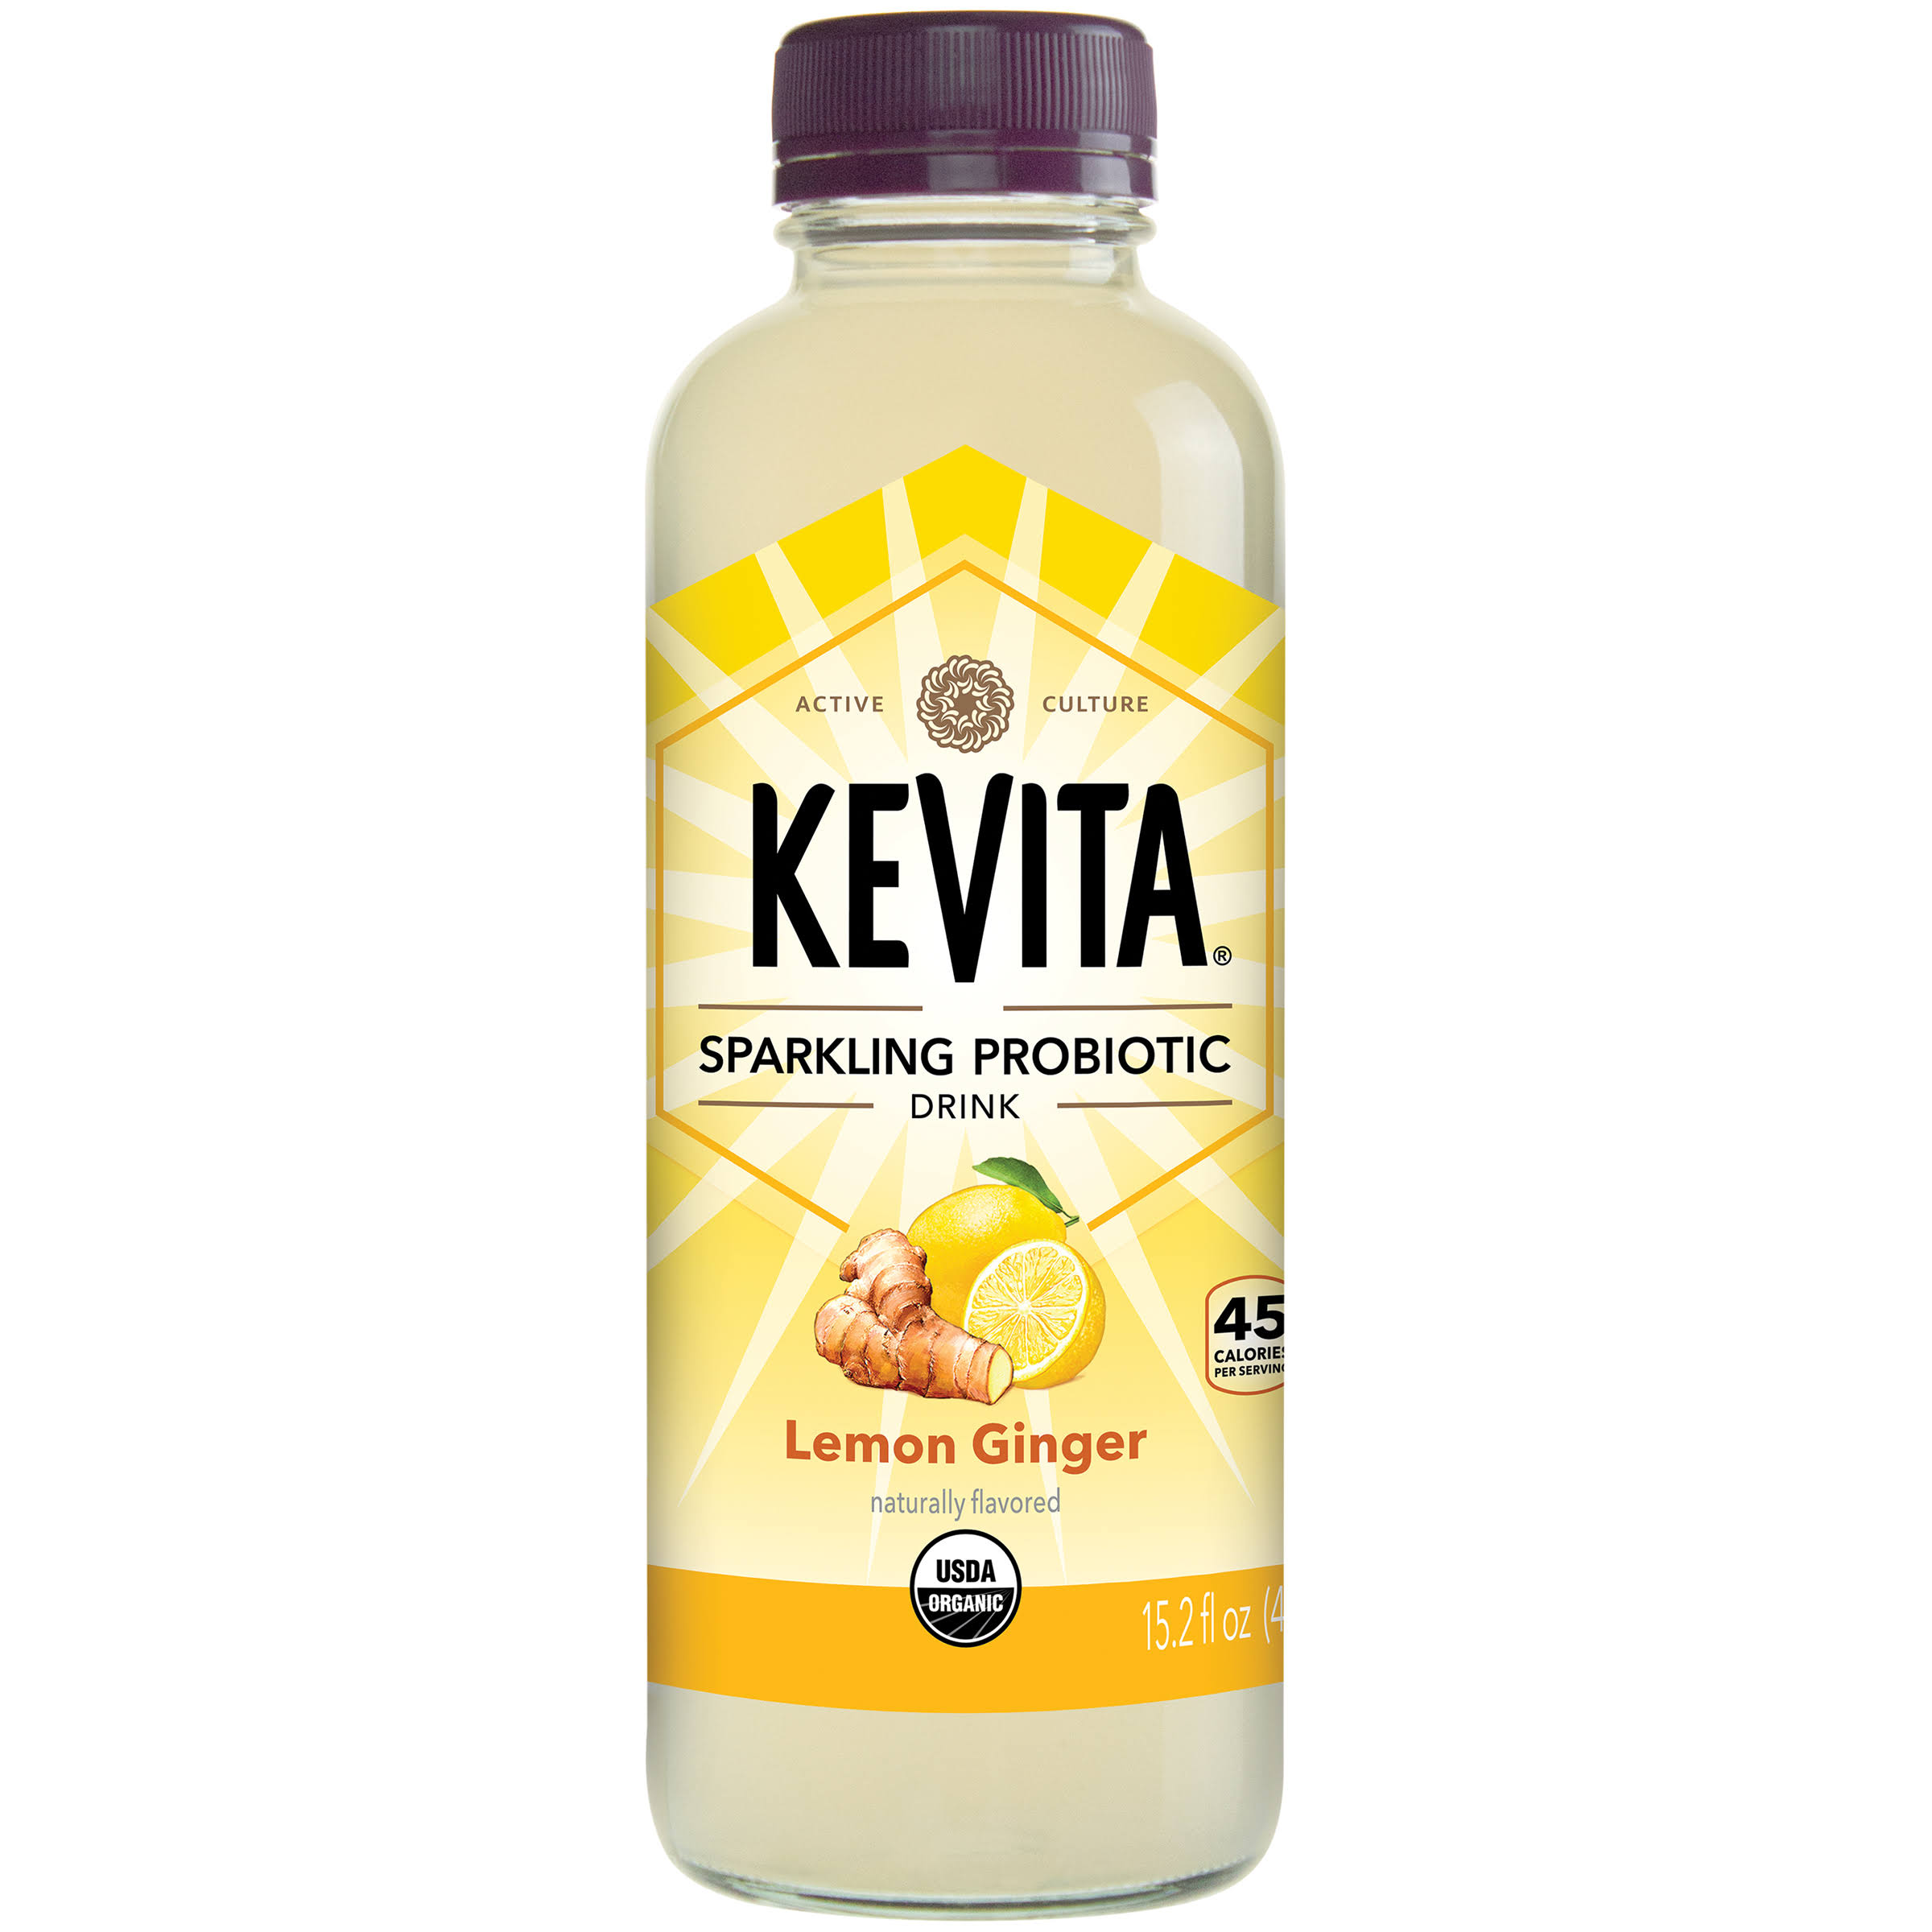 KeVita Sparkling Probiotic Drink - Lemon Ginger, 15.2oz